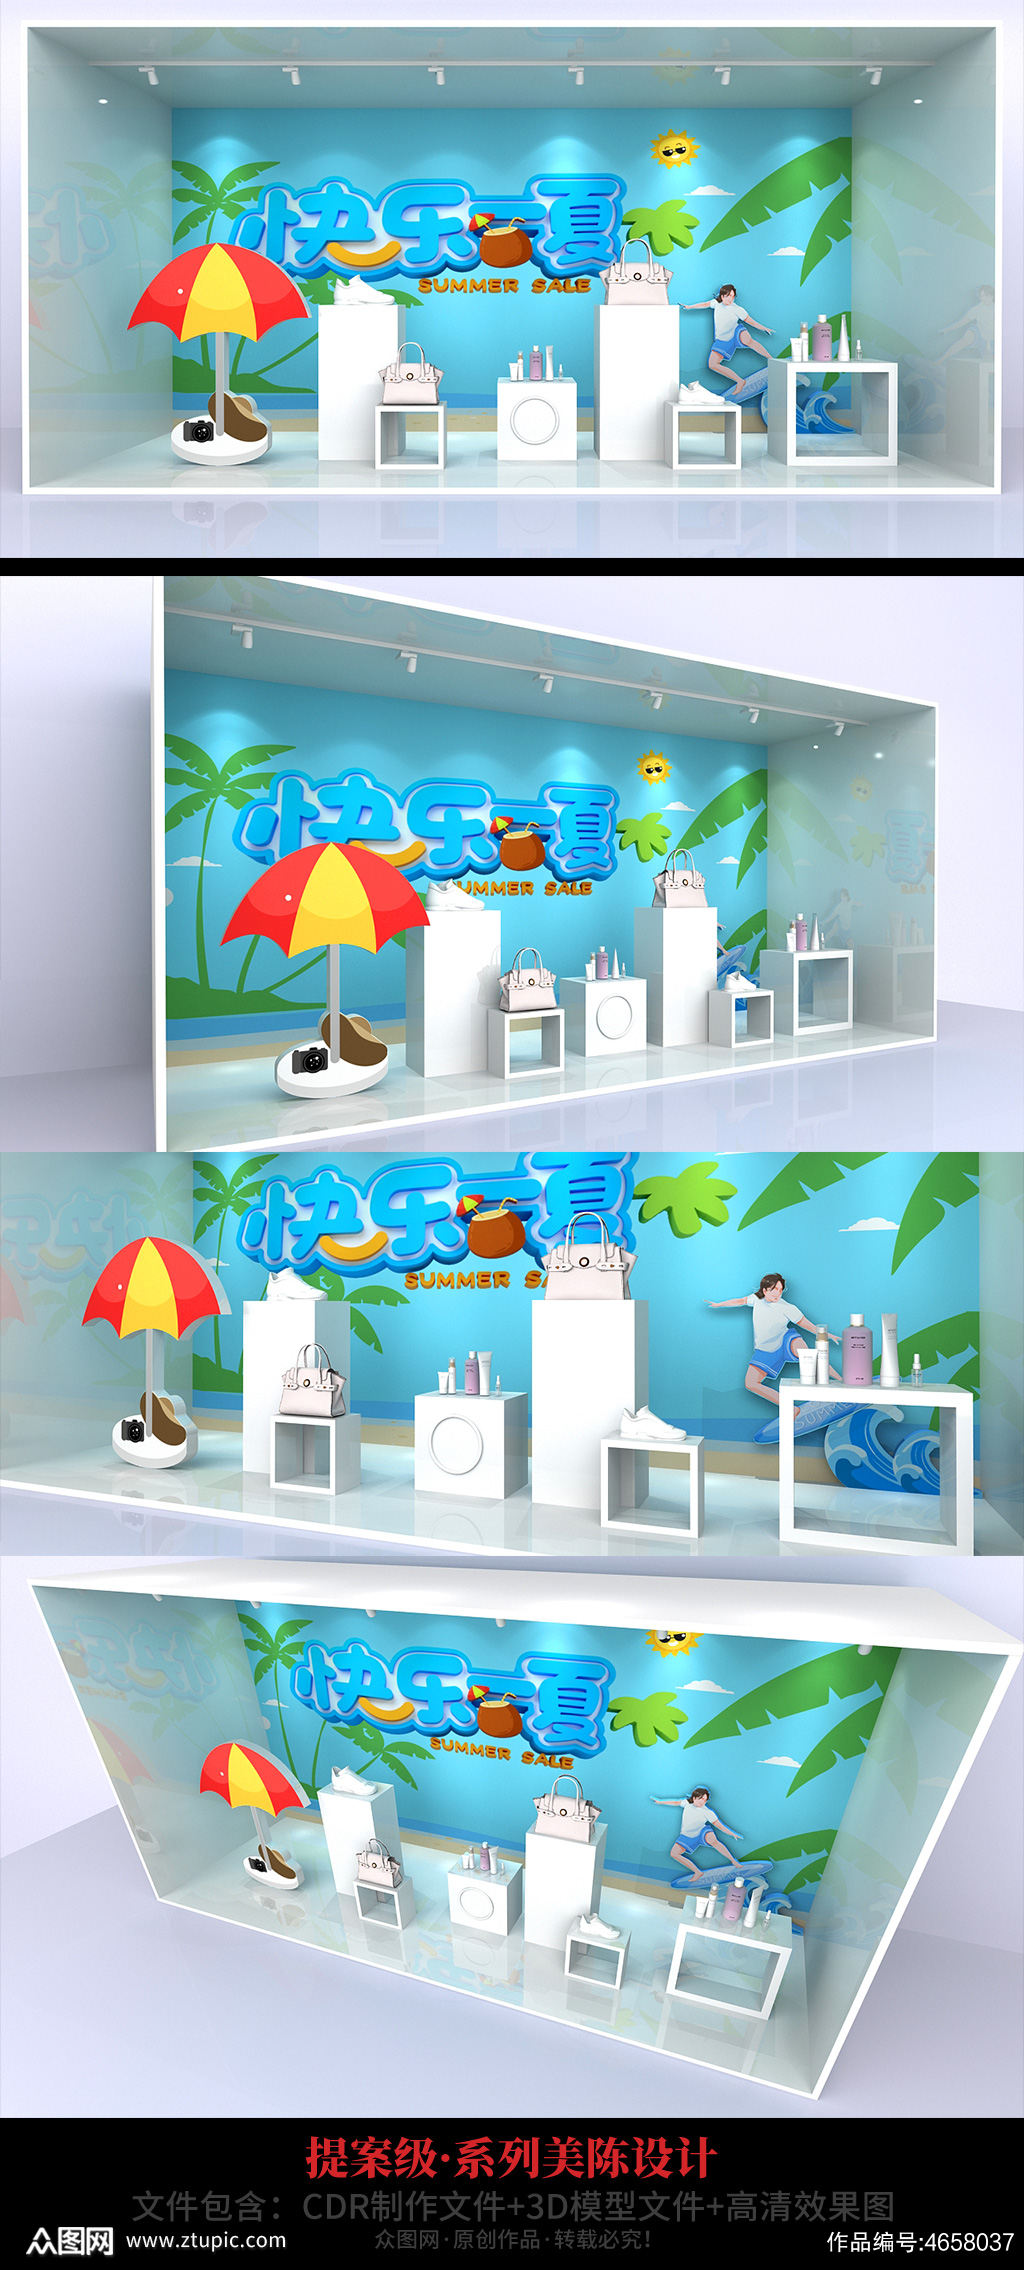 夏季蓝色沙滩主题快乐一夏商场橱窗美陈素材